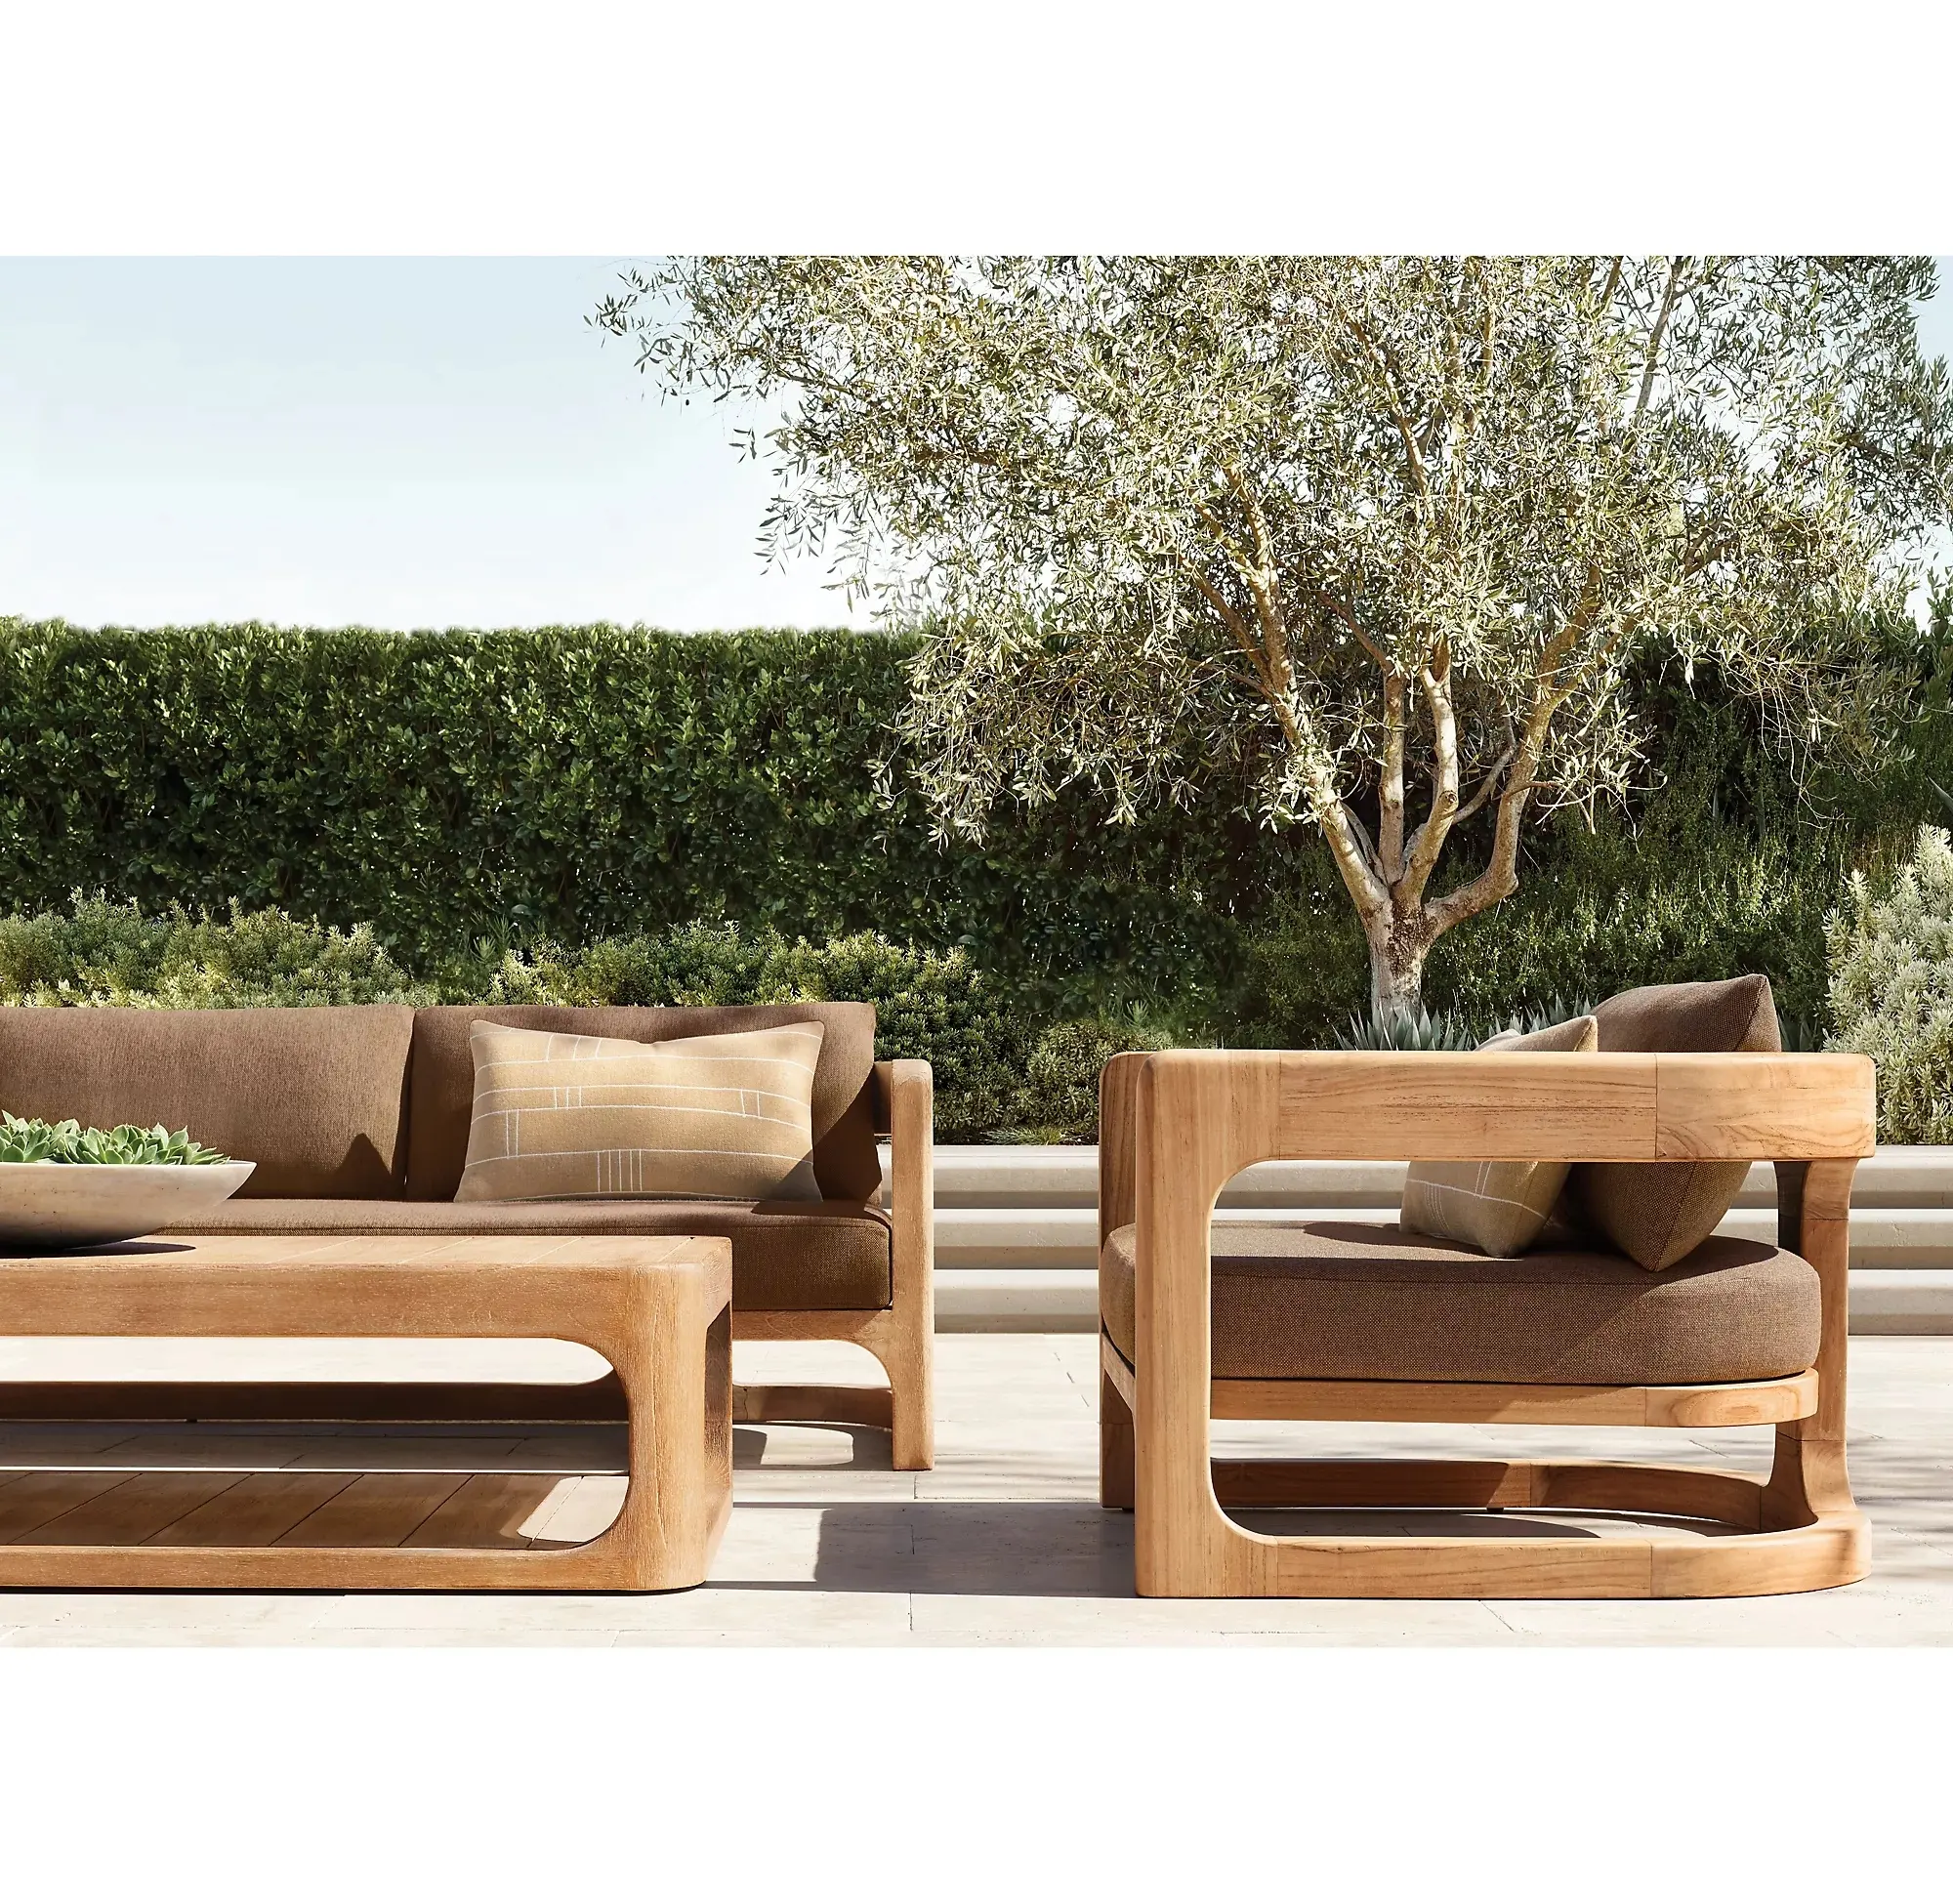 Luxus-Esstisch aus Teakholz im Freien mit Teakholz-Sofa garnitur